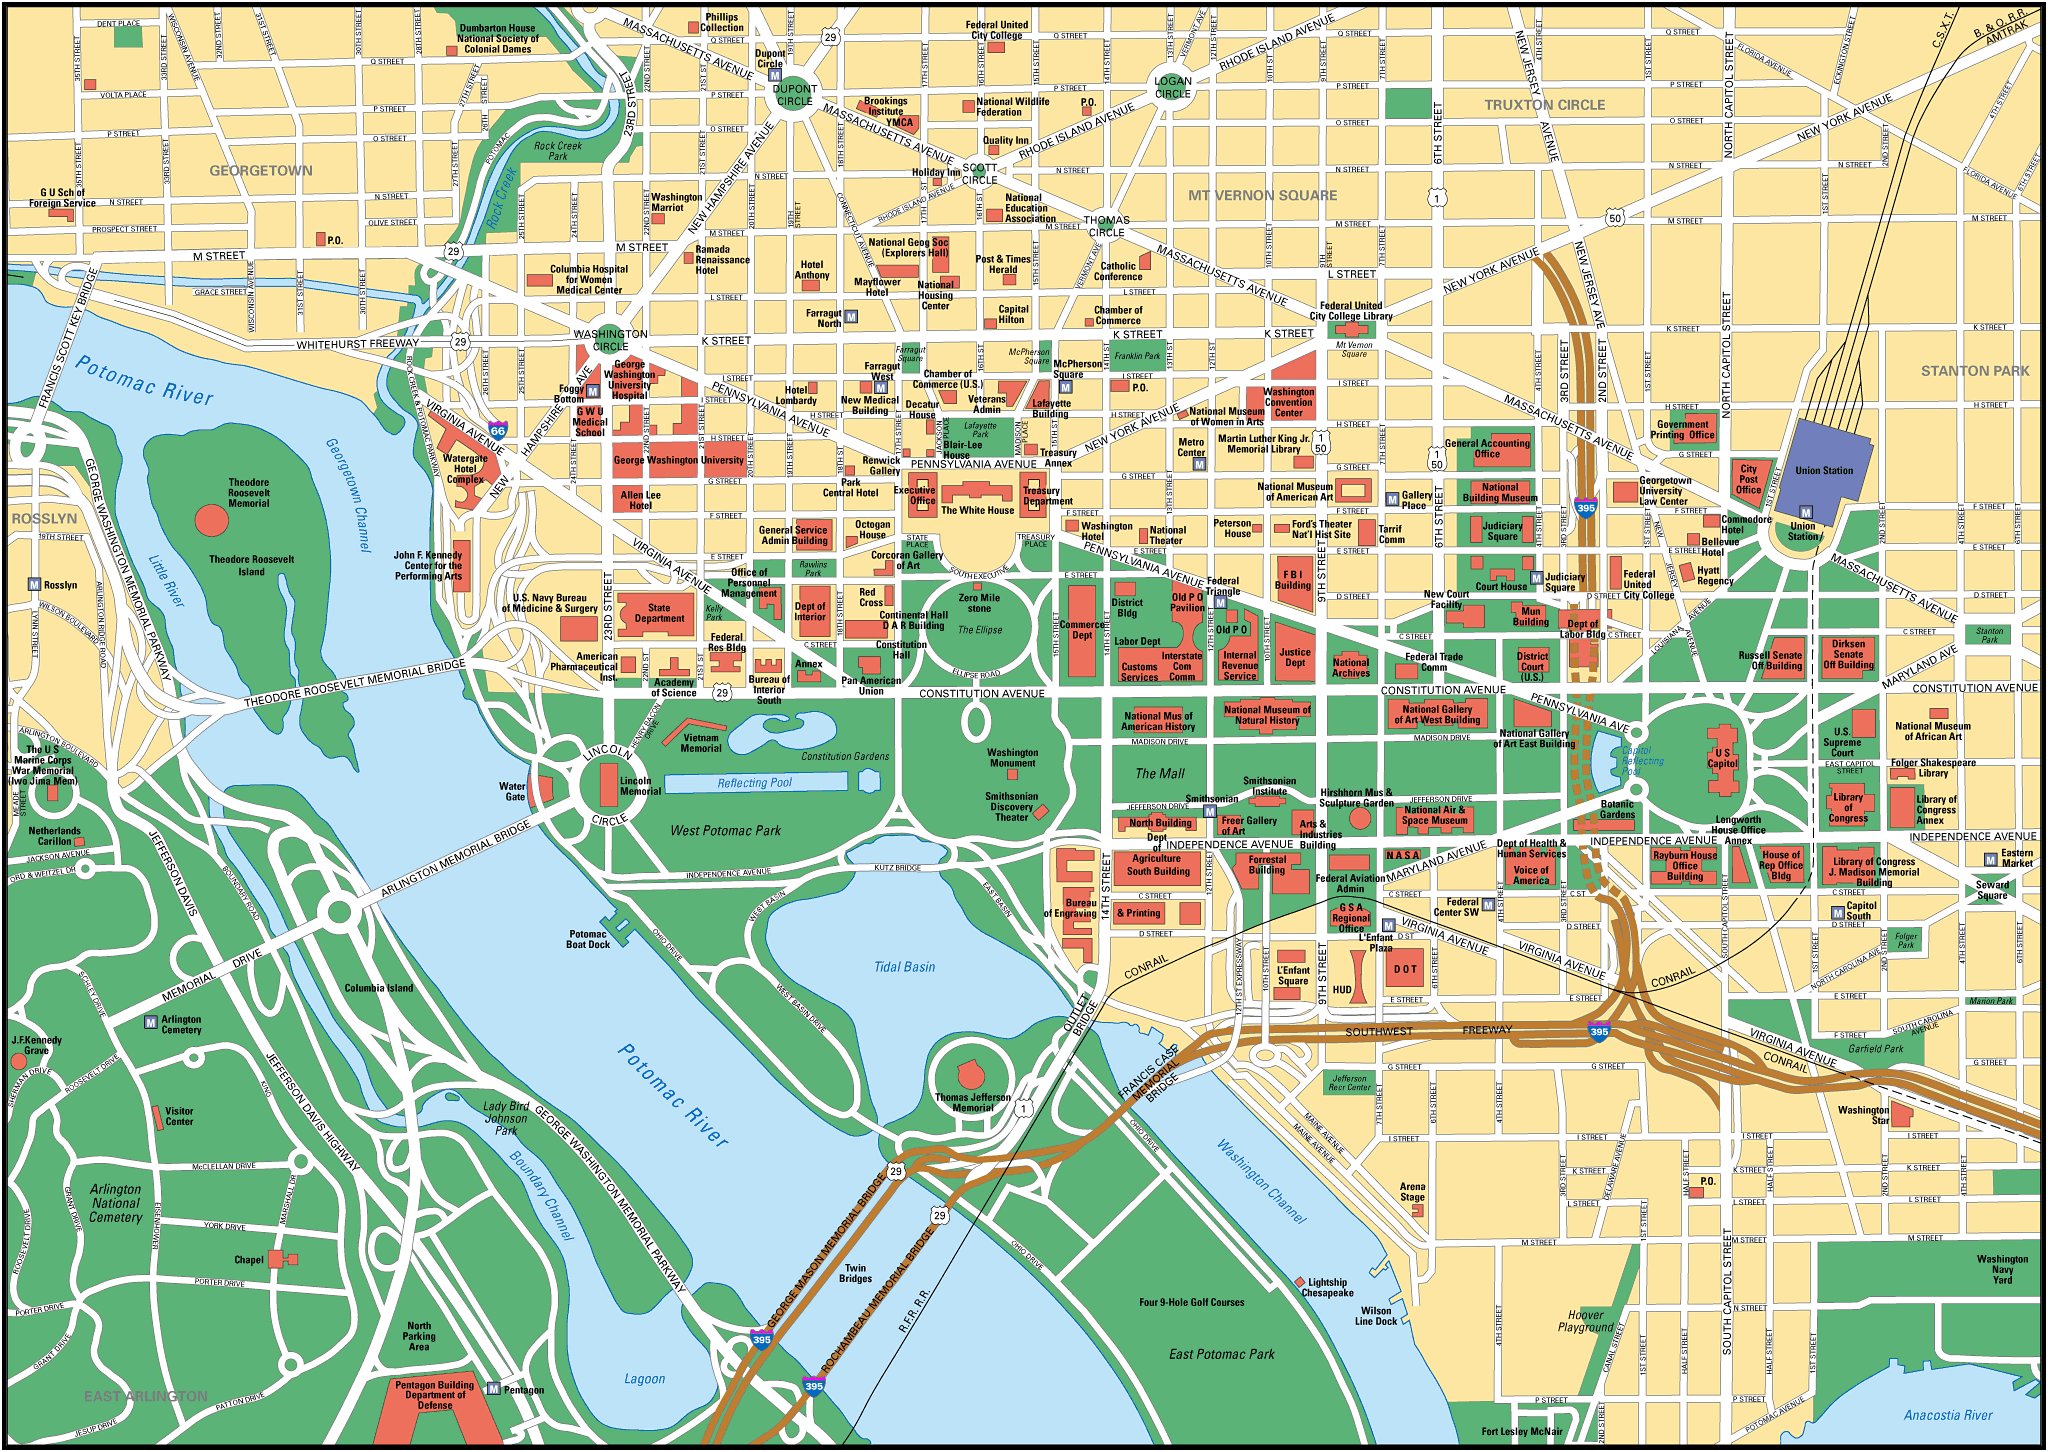 Mapa Washington